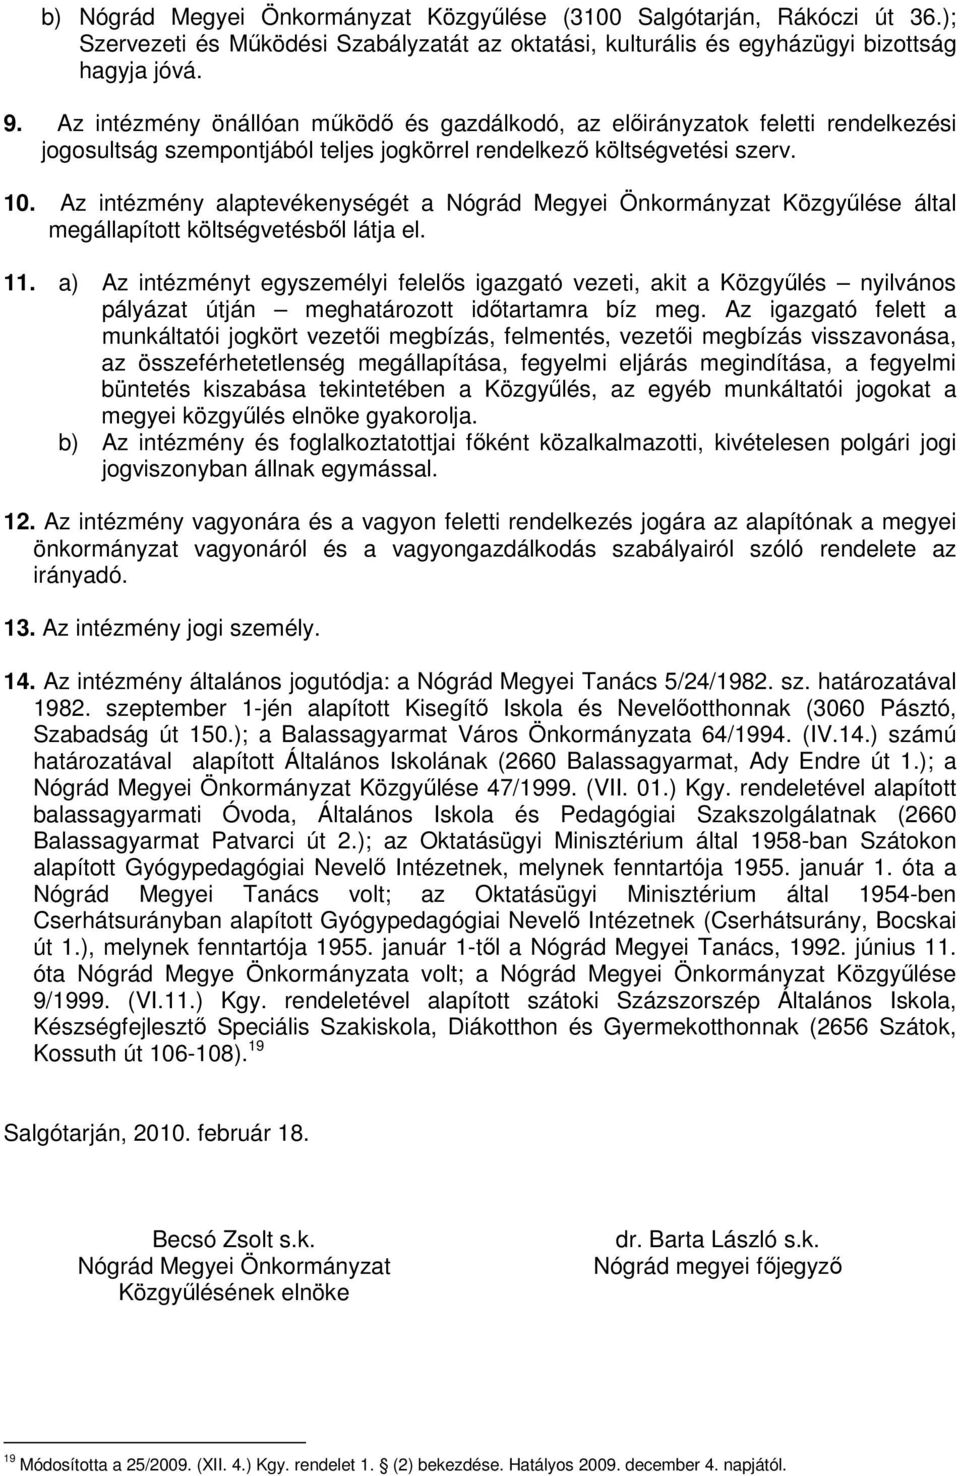 Az intézmény alaptevékenységét a Nógrád Megyei Önkormányzat Közgyűlése által megállapított költségvetésből látja el. 11.